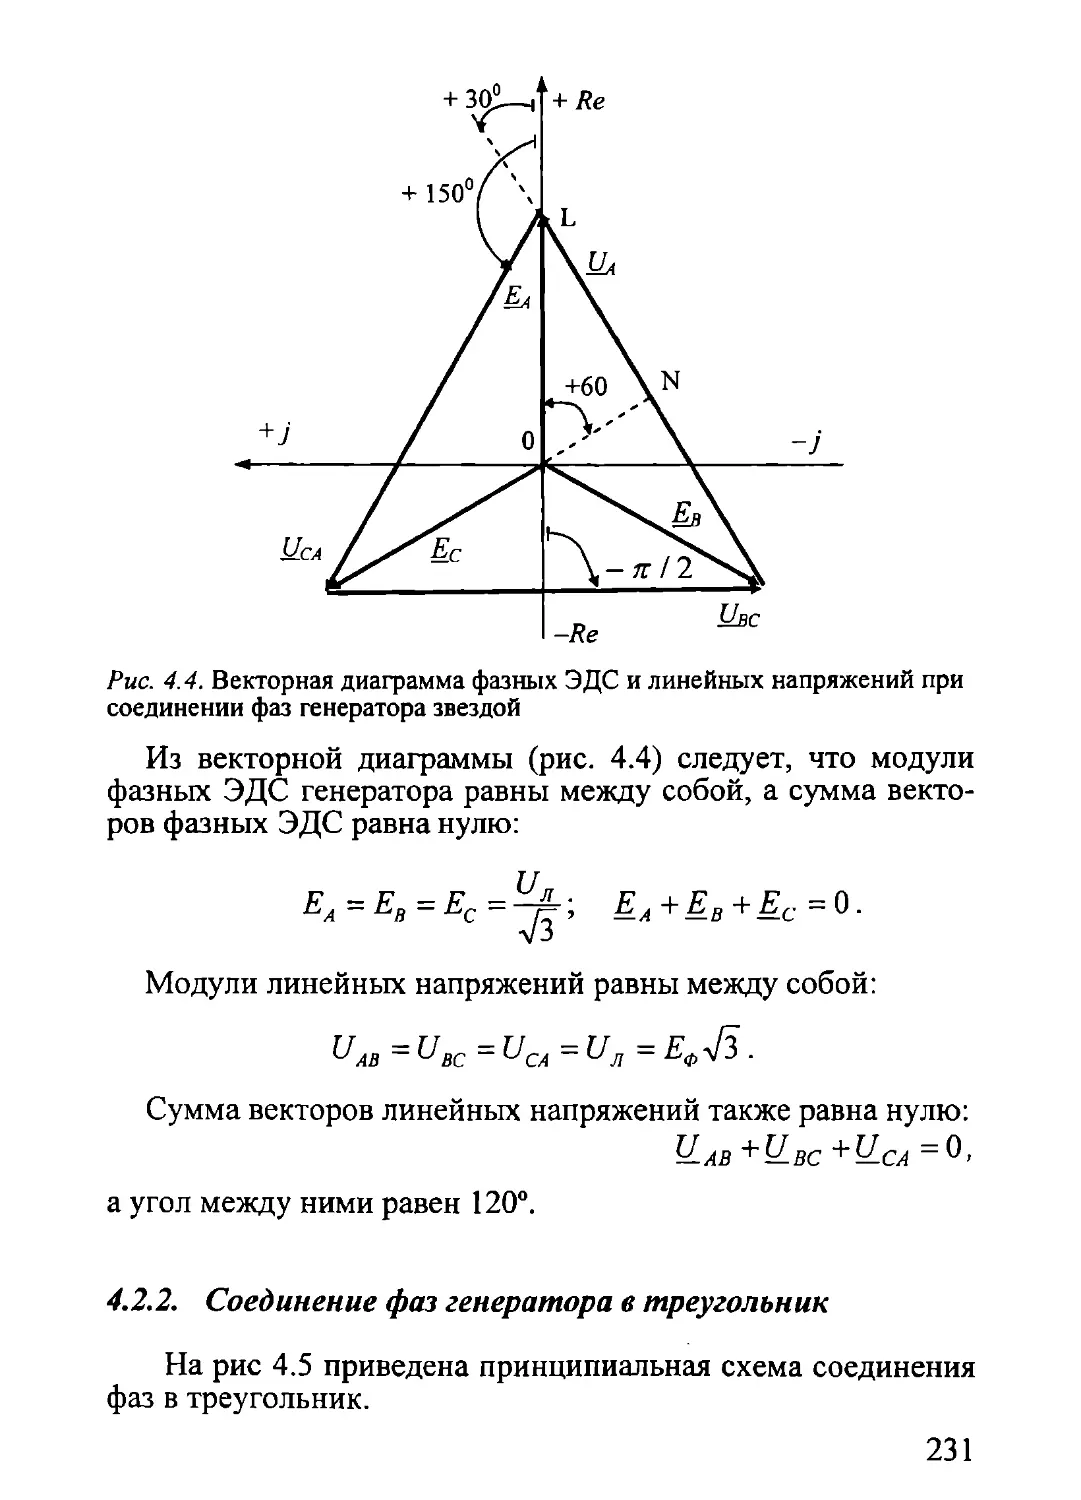 4.2.2. Соединение фаз генератора в треугольник